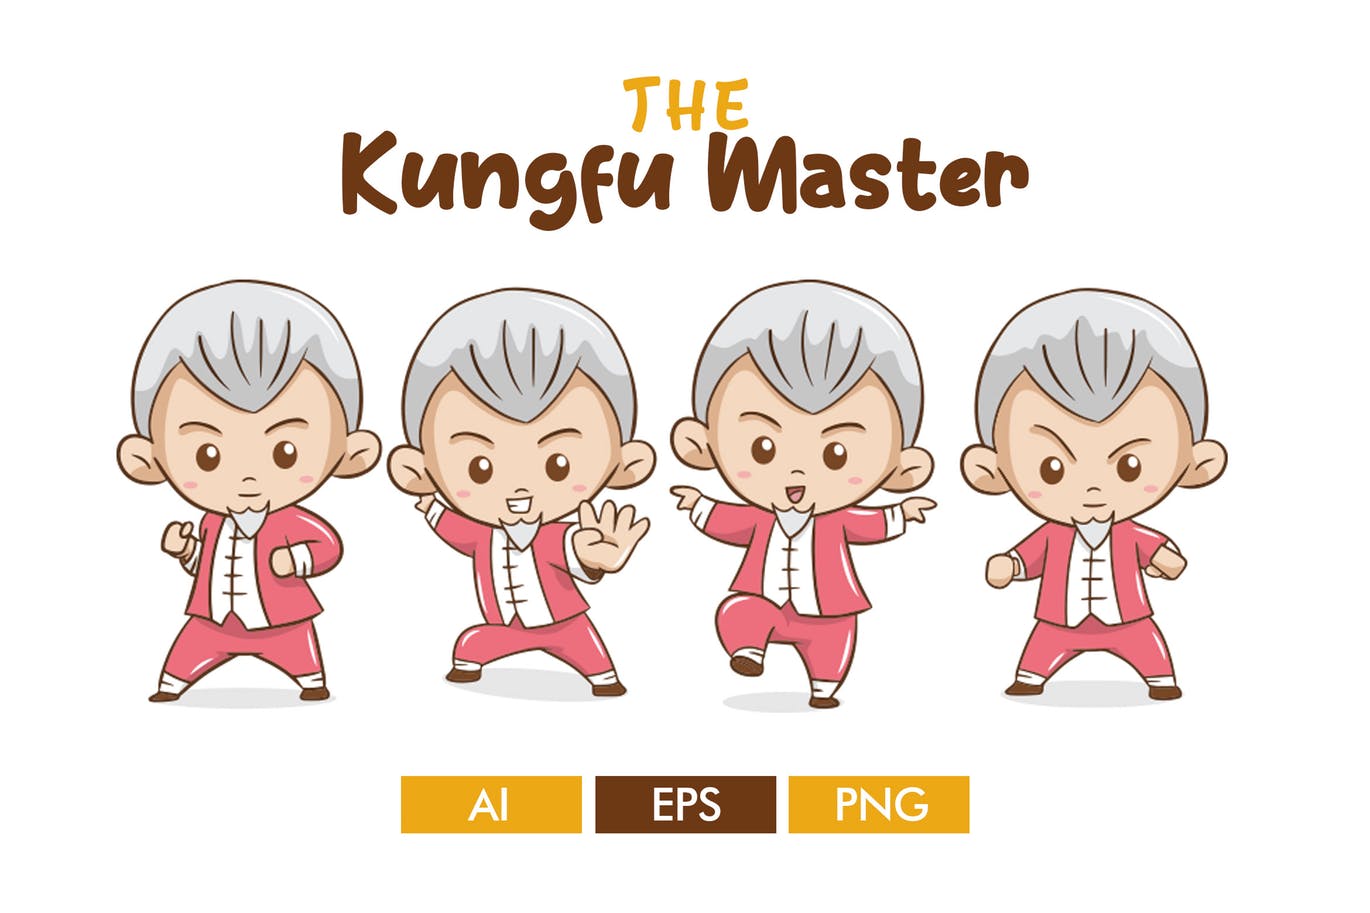 卡通形象功夫大师矢量非凡图库精选设计素材 The Kungfu Master插图